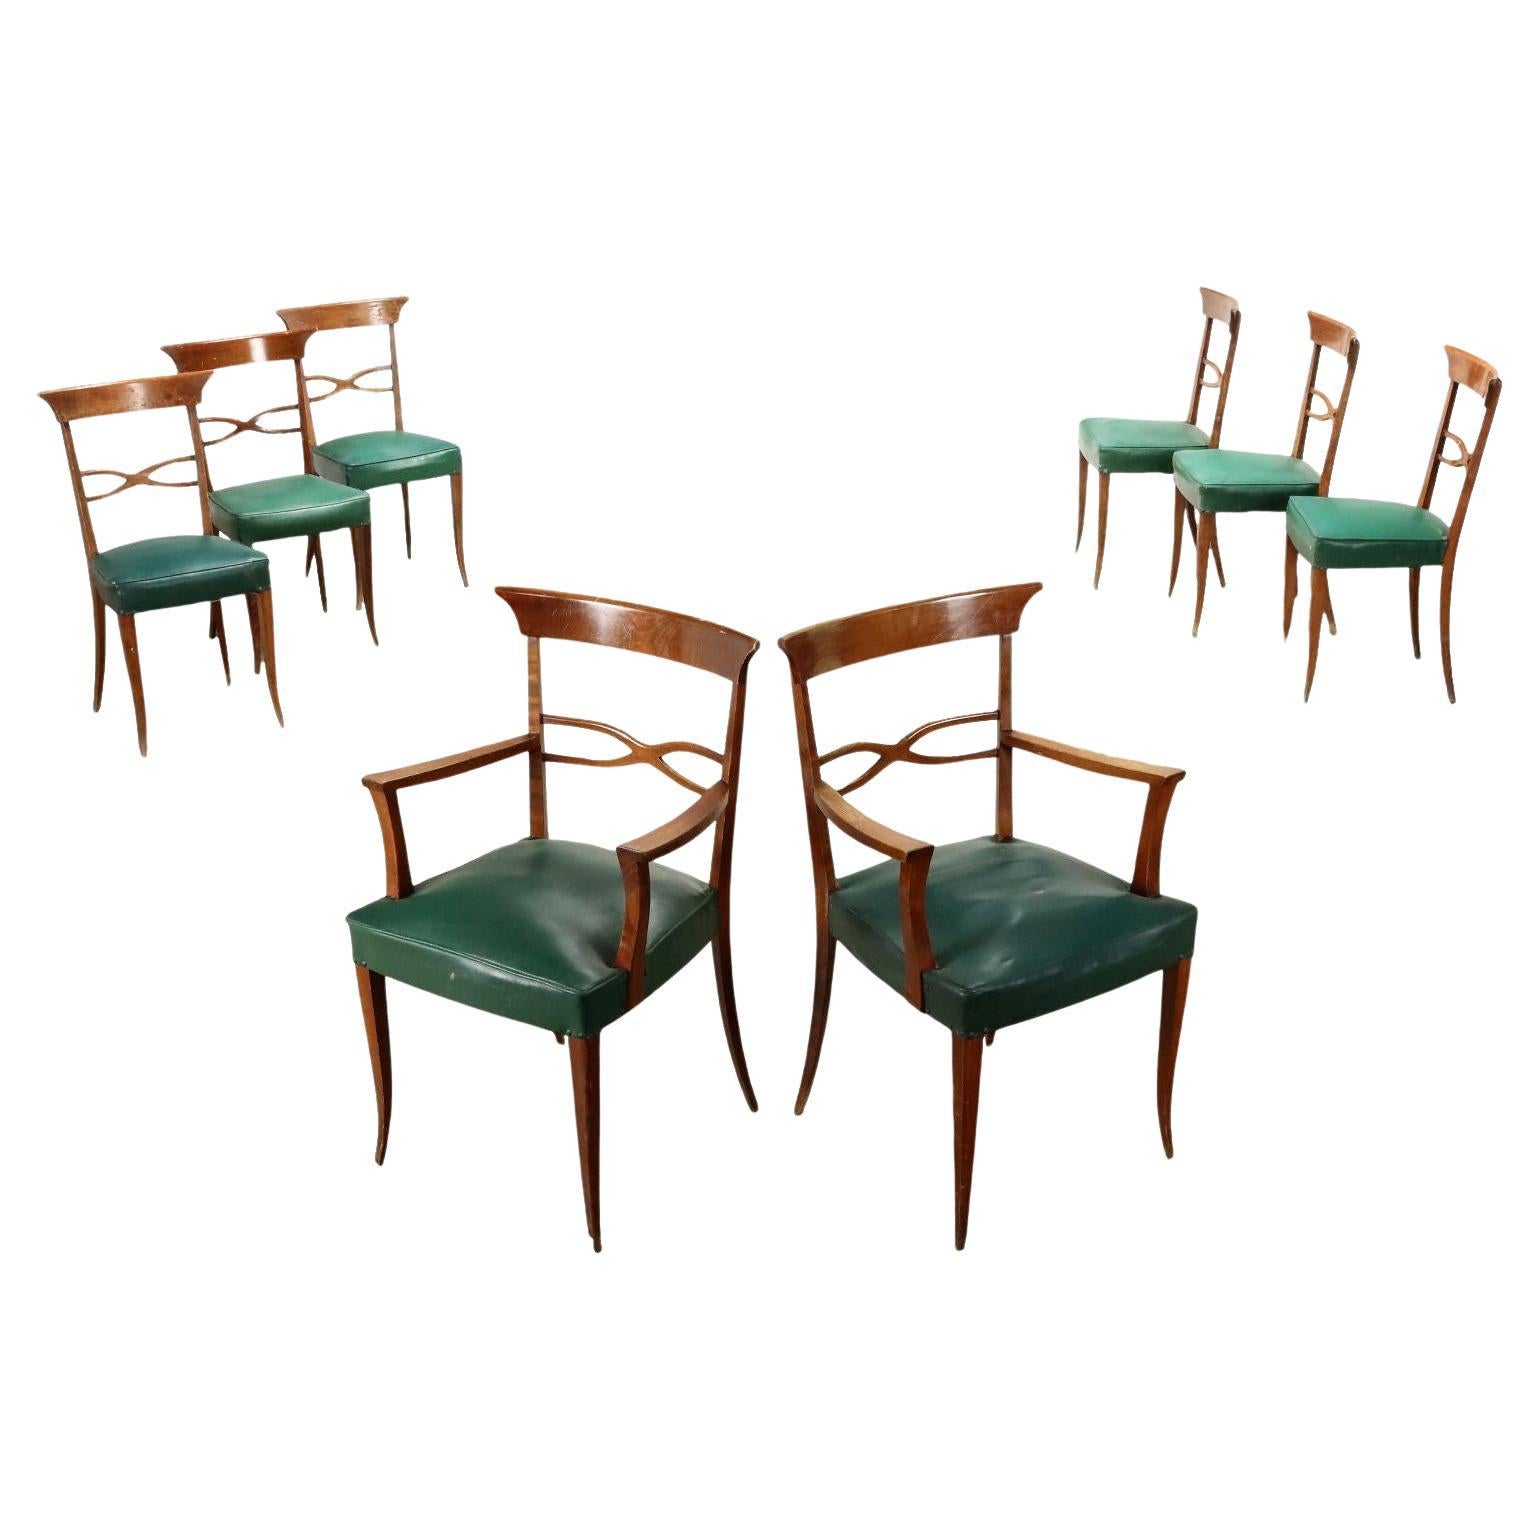 Gruppe von sechs Stühlen und zwei Sesseln aus Buche und grünem Kunstleder aus den 1950er Jahren